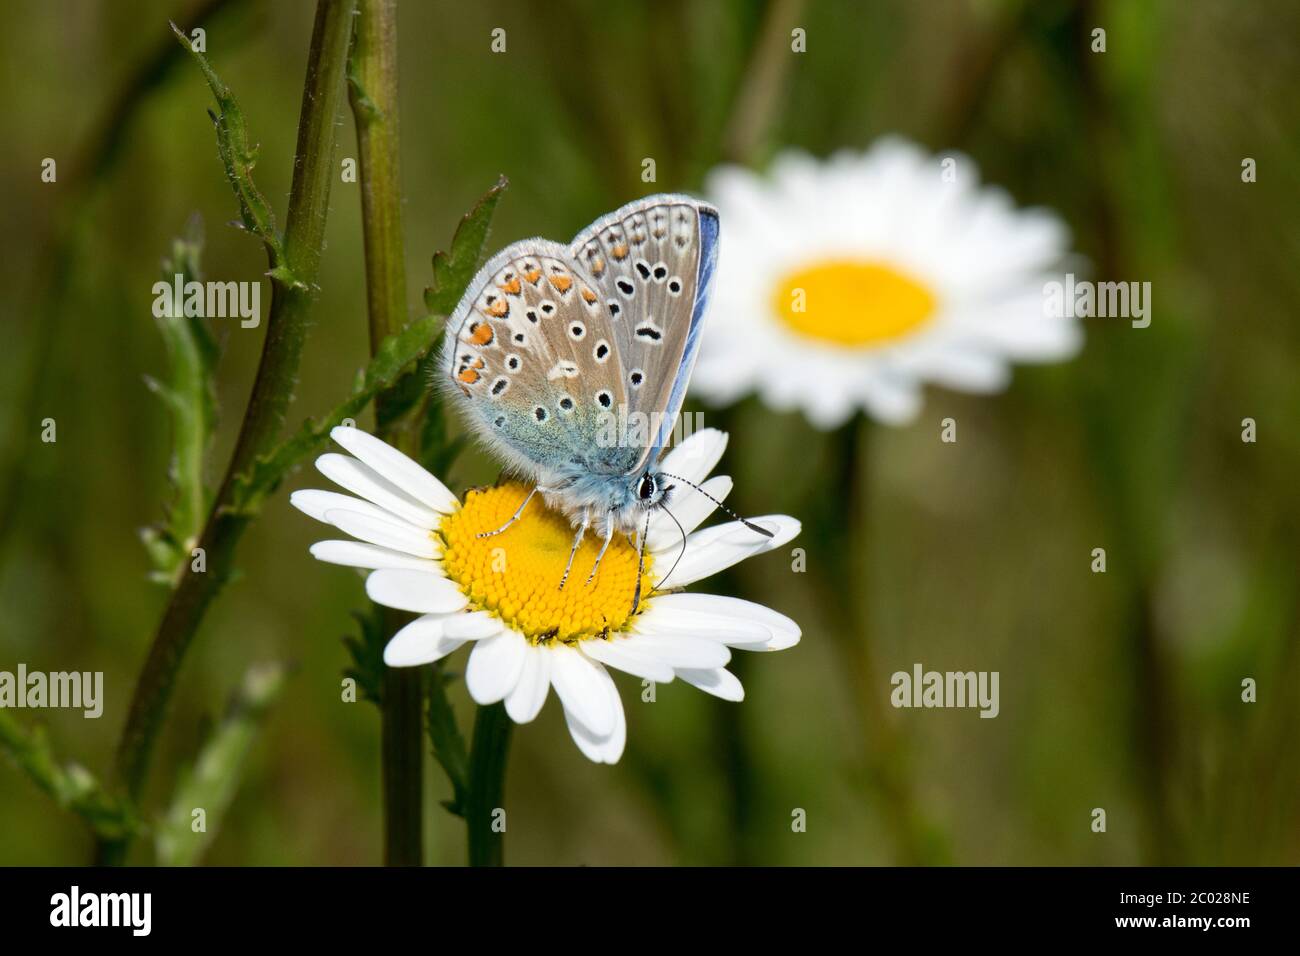 Maschio farfalla blu comune (Polyommatus icarus) impollinante e prendendo nettare da un bue-occhio daisy fiore, Berkshire, maggio Foto Stock